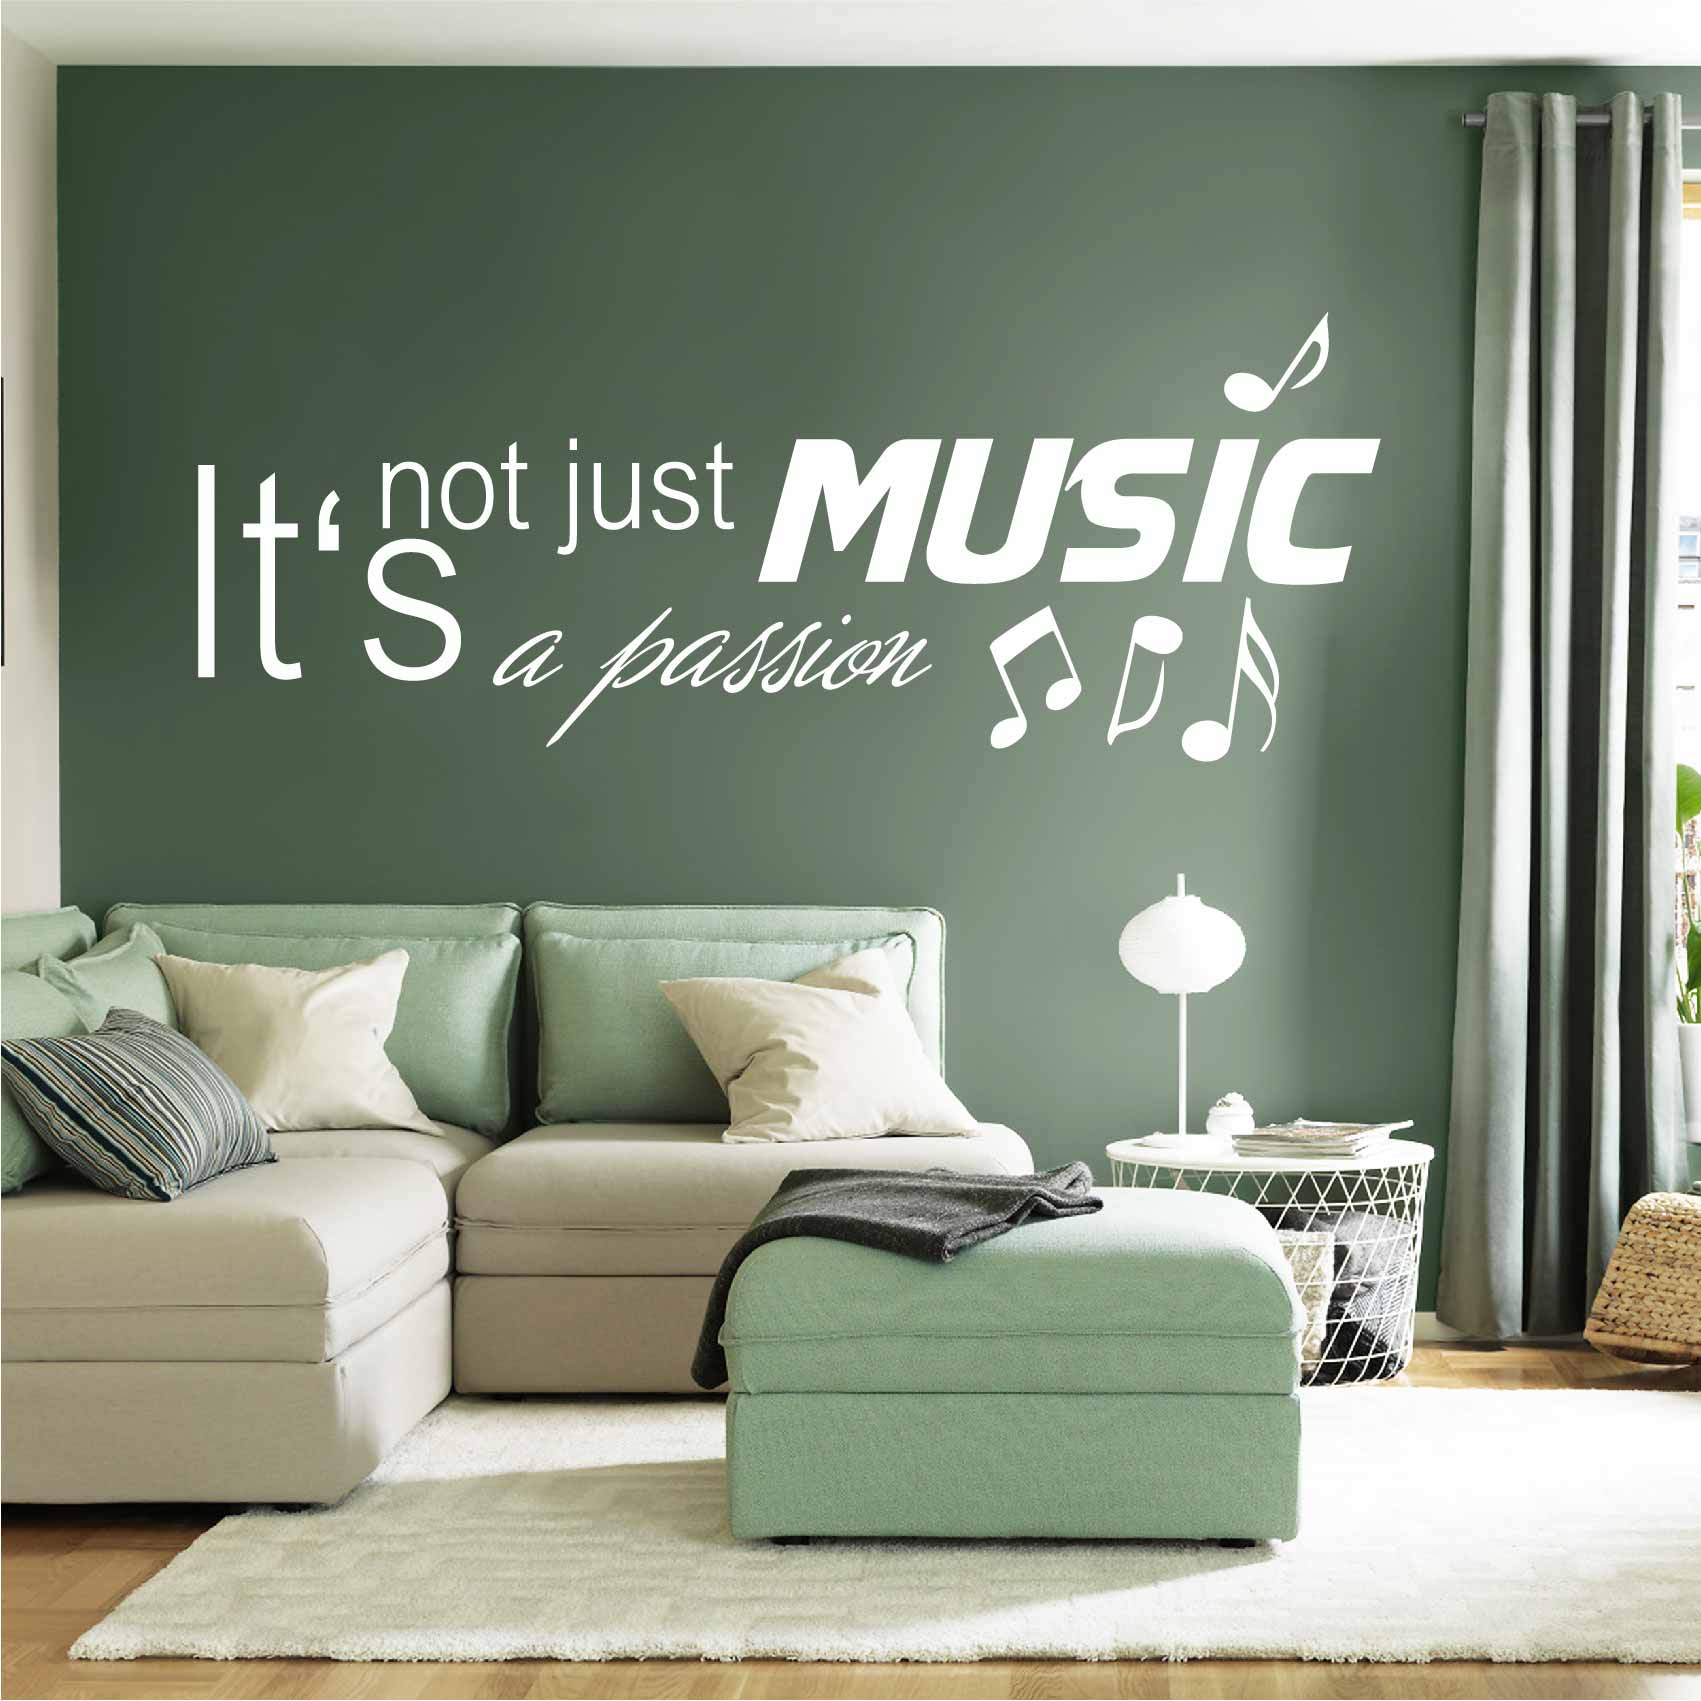 stickers-music-passion-ref22musique-autocollant-muraux-musique-sticker-mural-musical-note-notes-deco-salon-chambre-adulte-ado-enfant